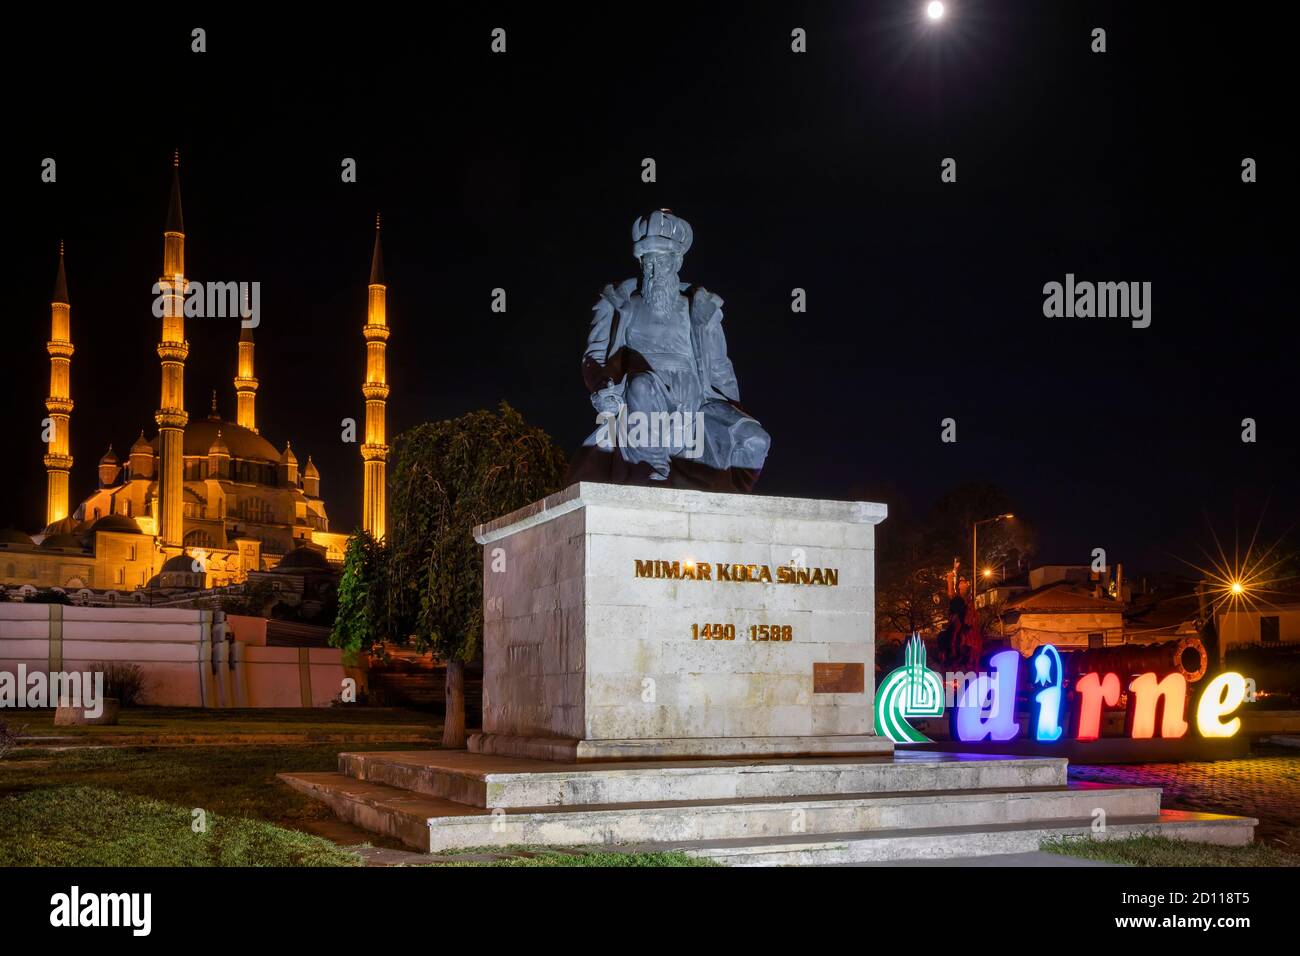 La mosquée Selimiye est une mosquée impériale ottomane, située dans la ville d'Edirne. Vue générale depuis la mosquée Selimiye avec monuments et statue Banque D'Images